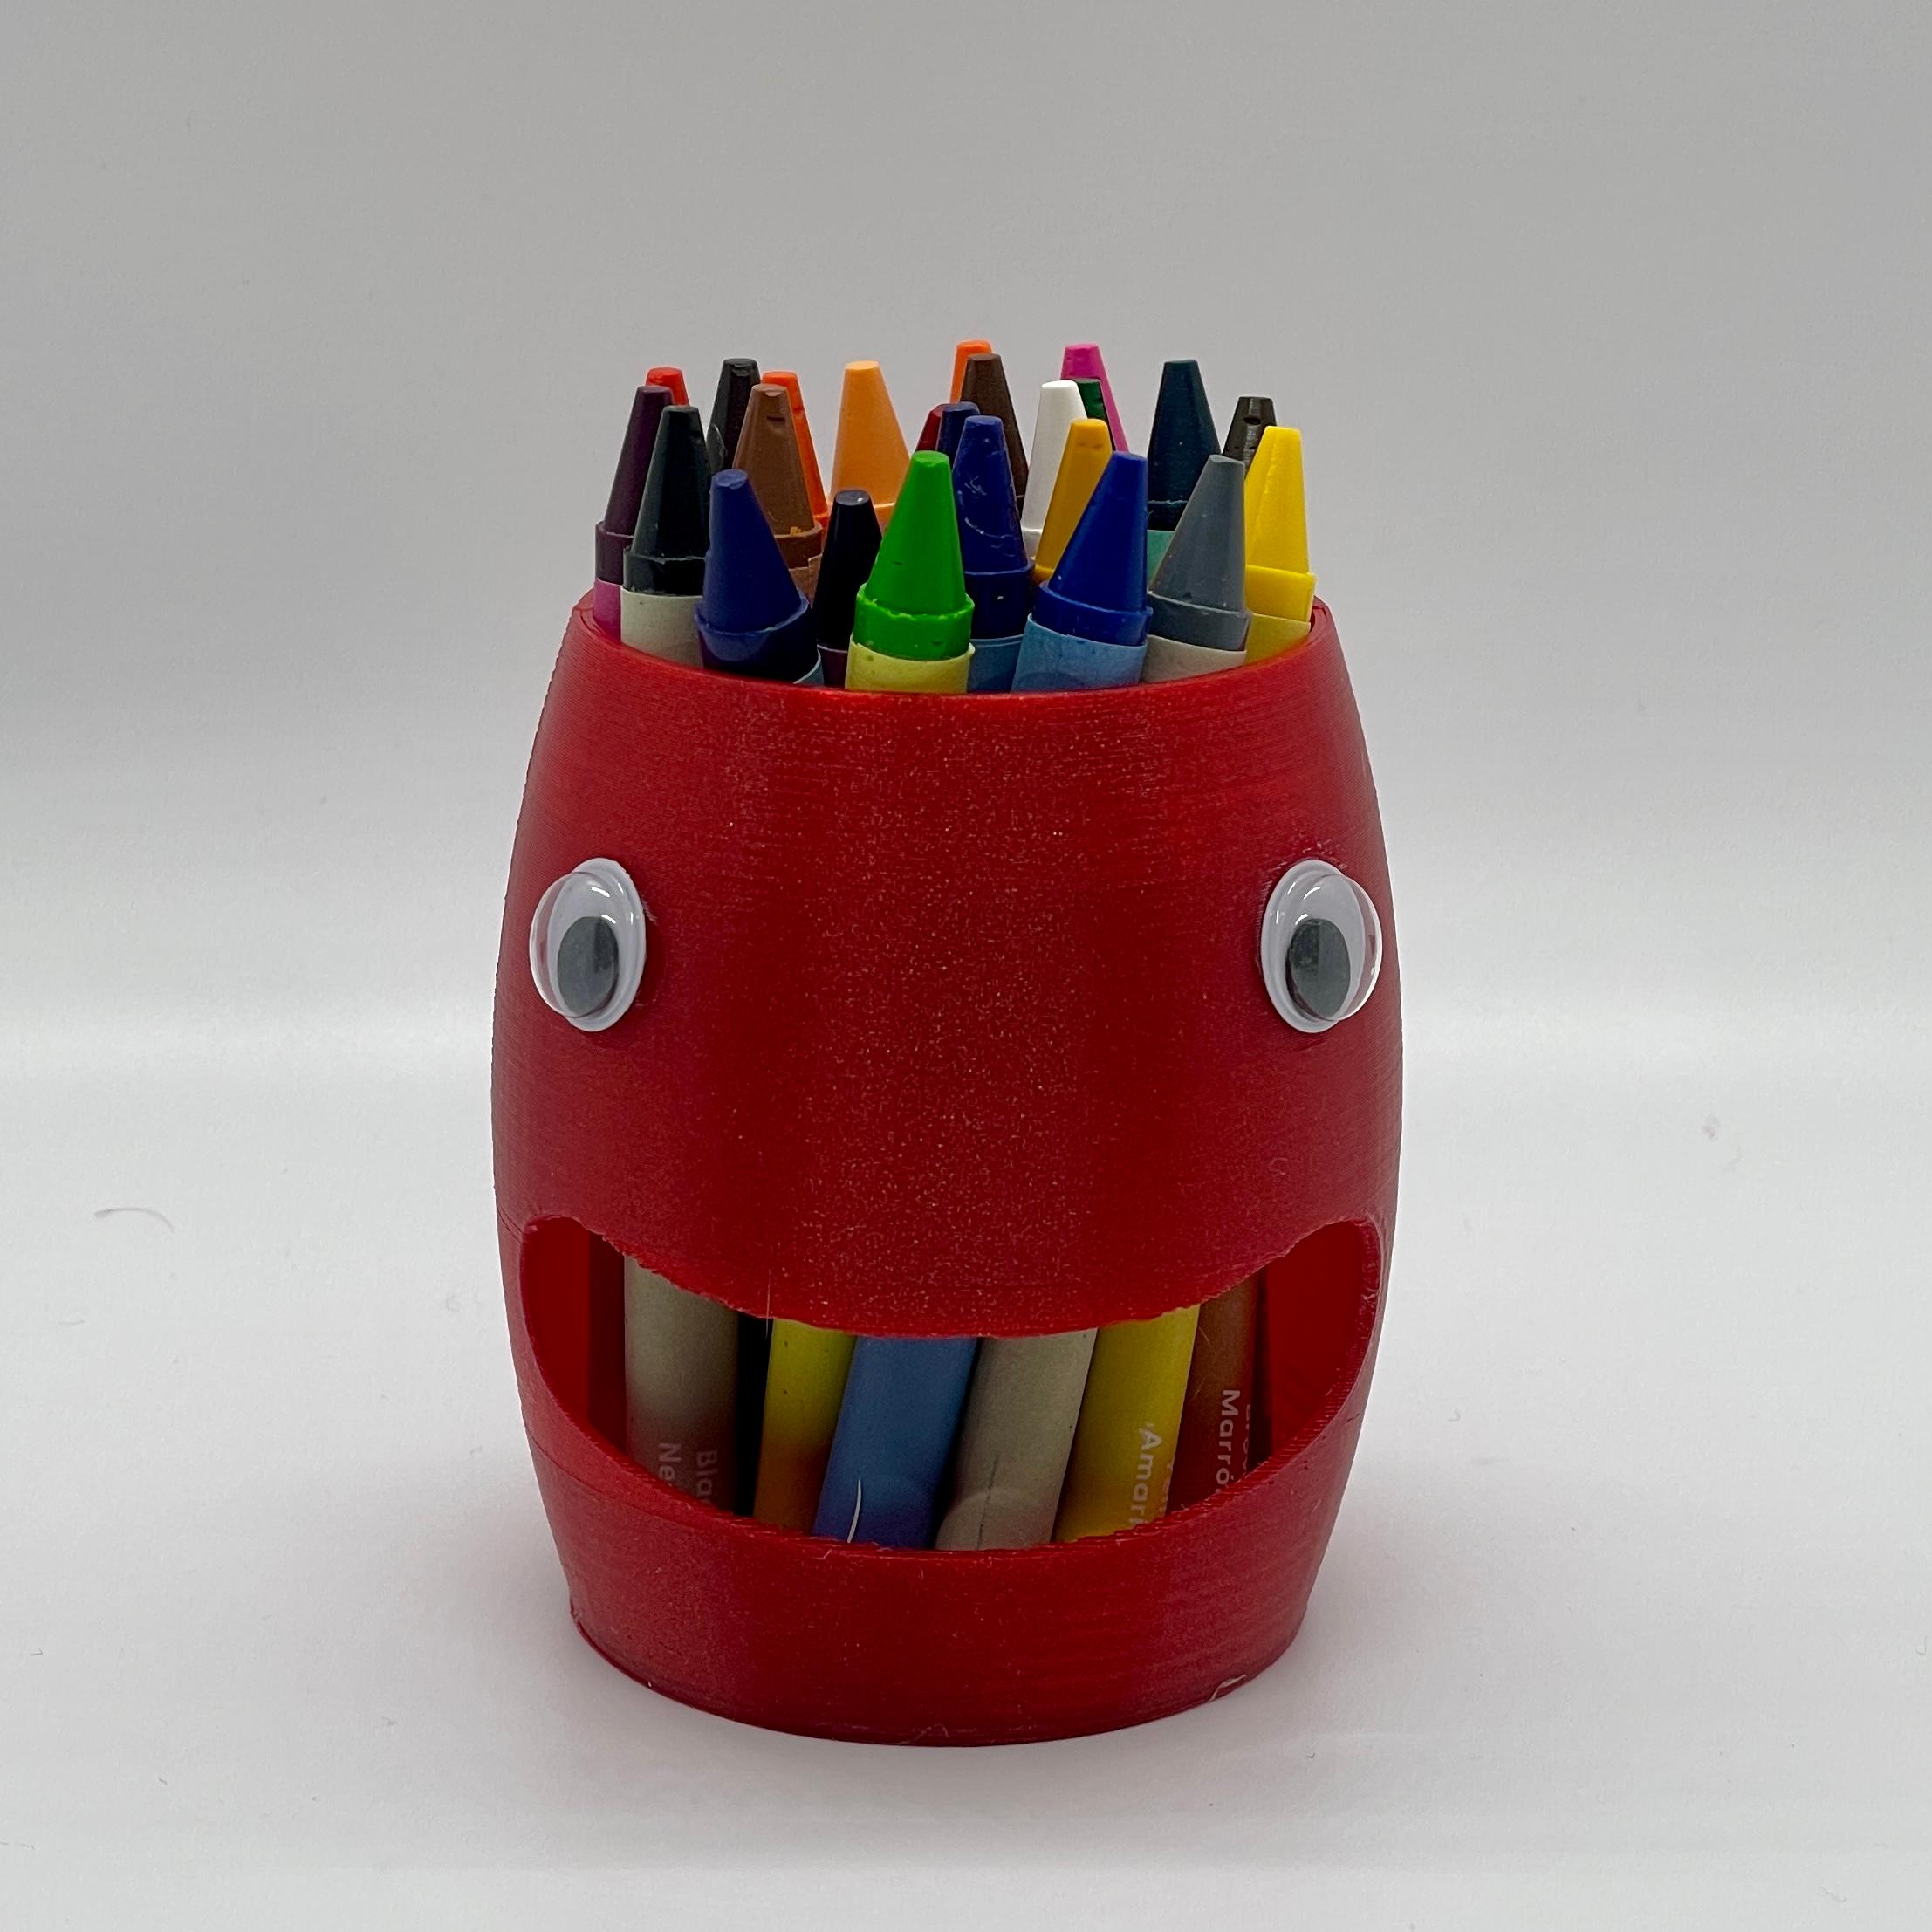 crayon 3D